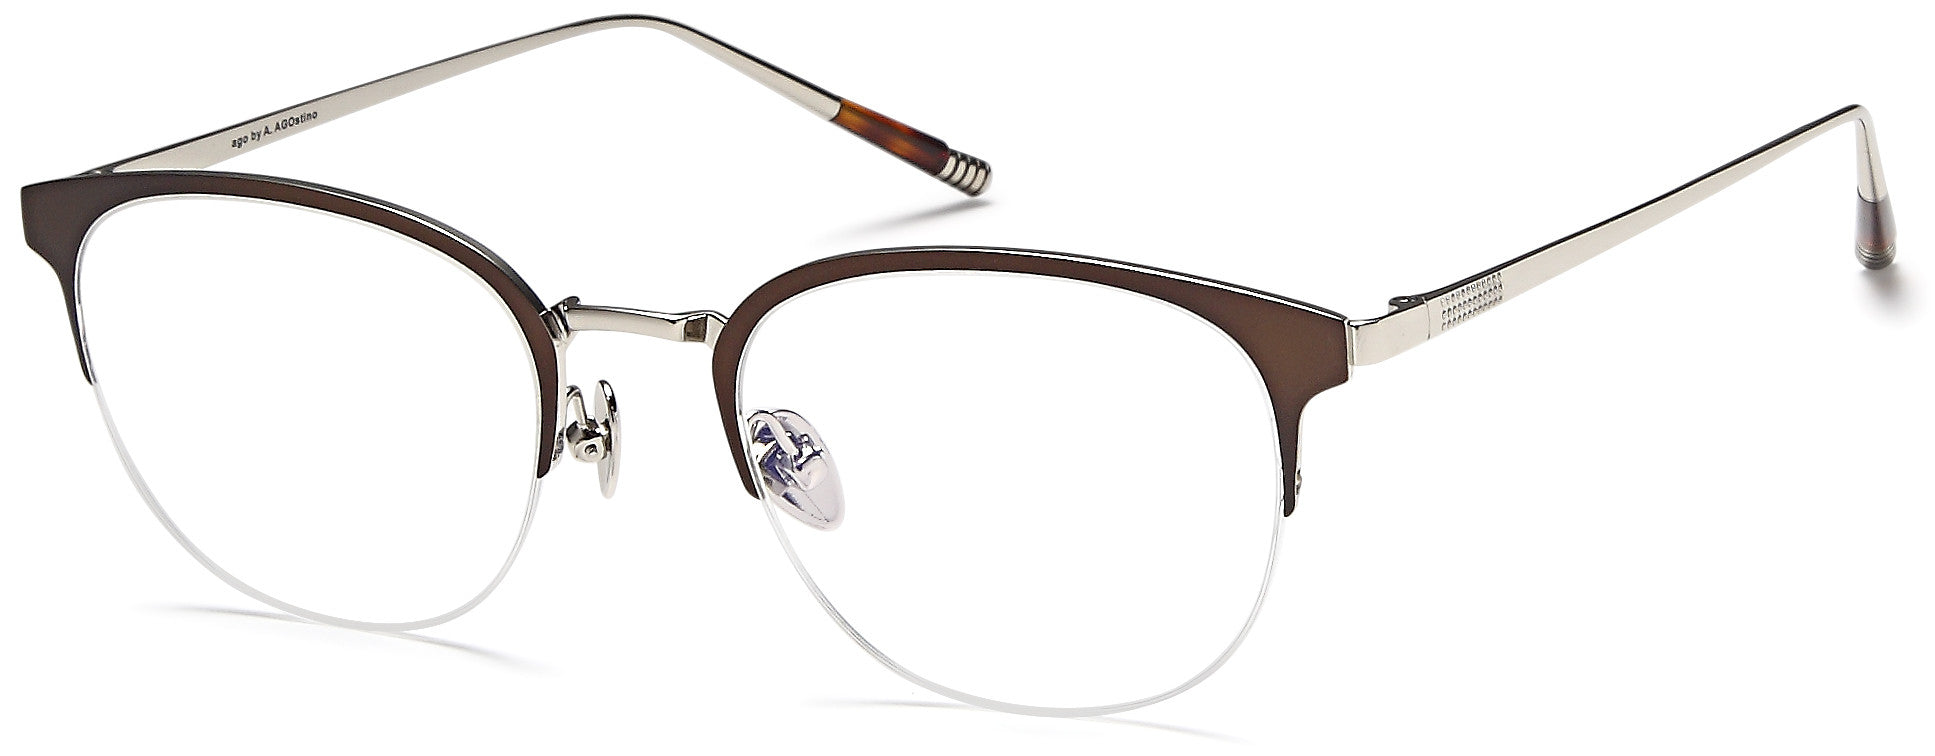 AGO Eyeglasses MF90007